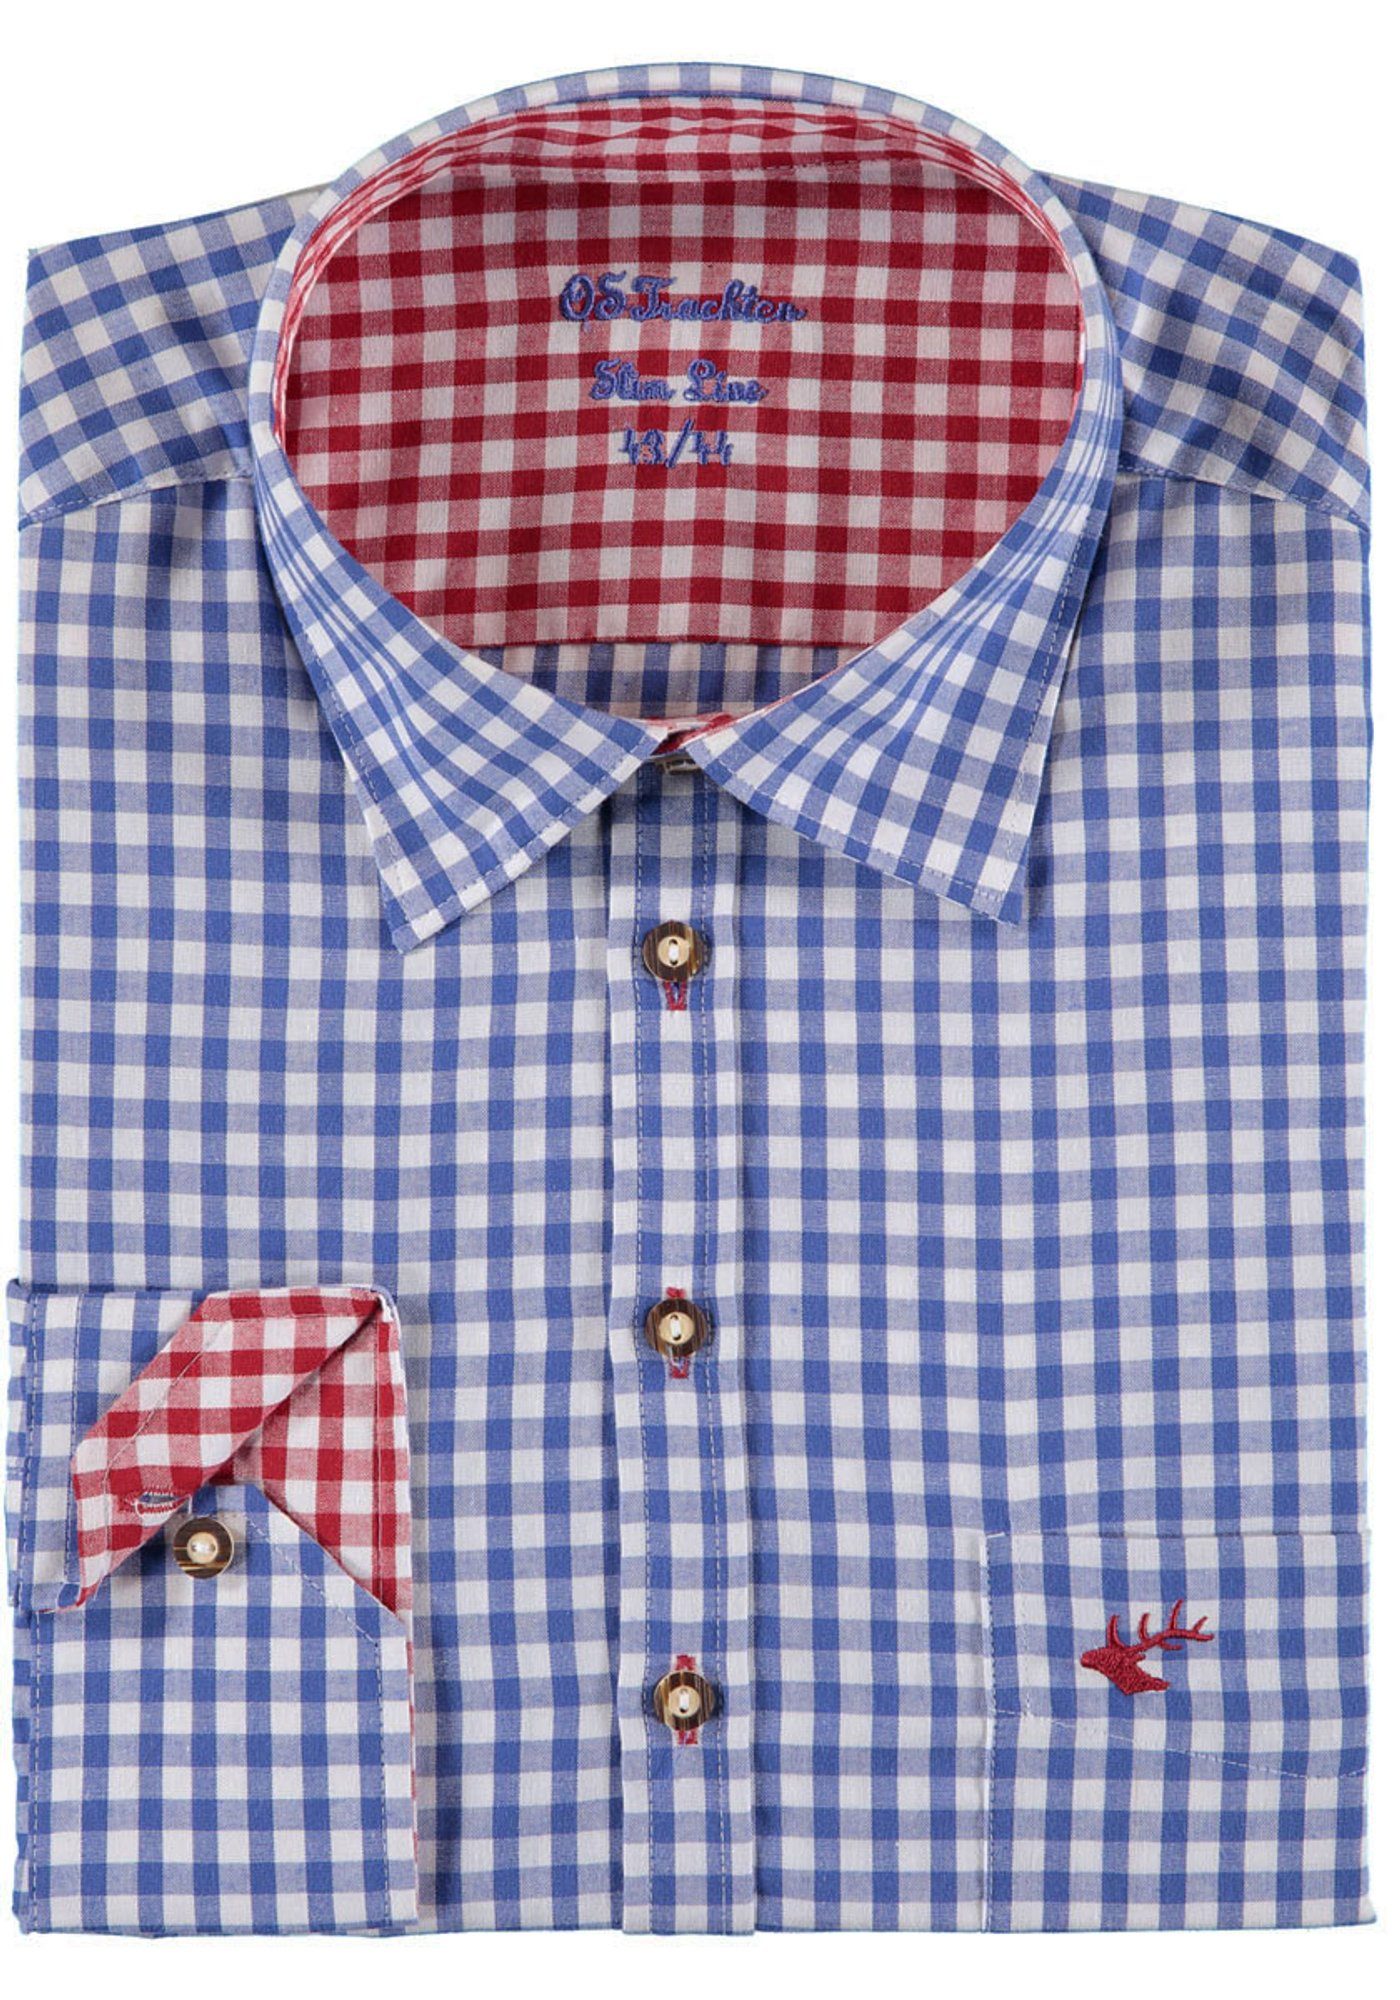 OS-Trachten Trachtenhemd Pasevu Langarmhemd mit Hirsch-Stickerei auf der Brusttasche mittelblau